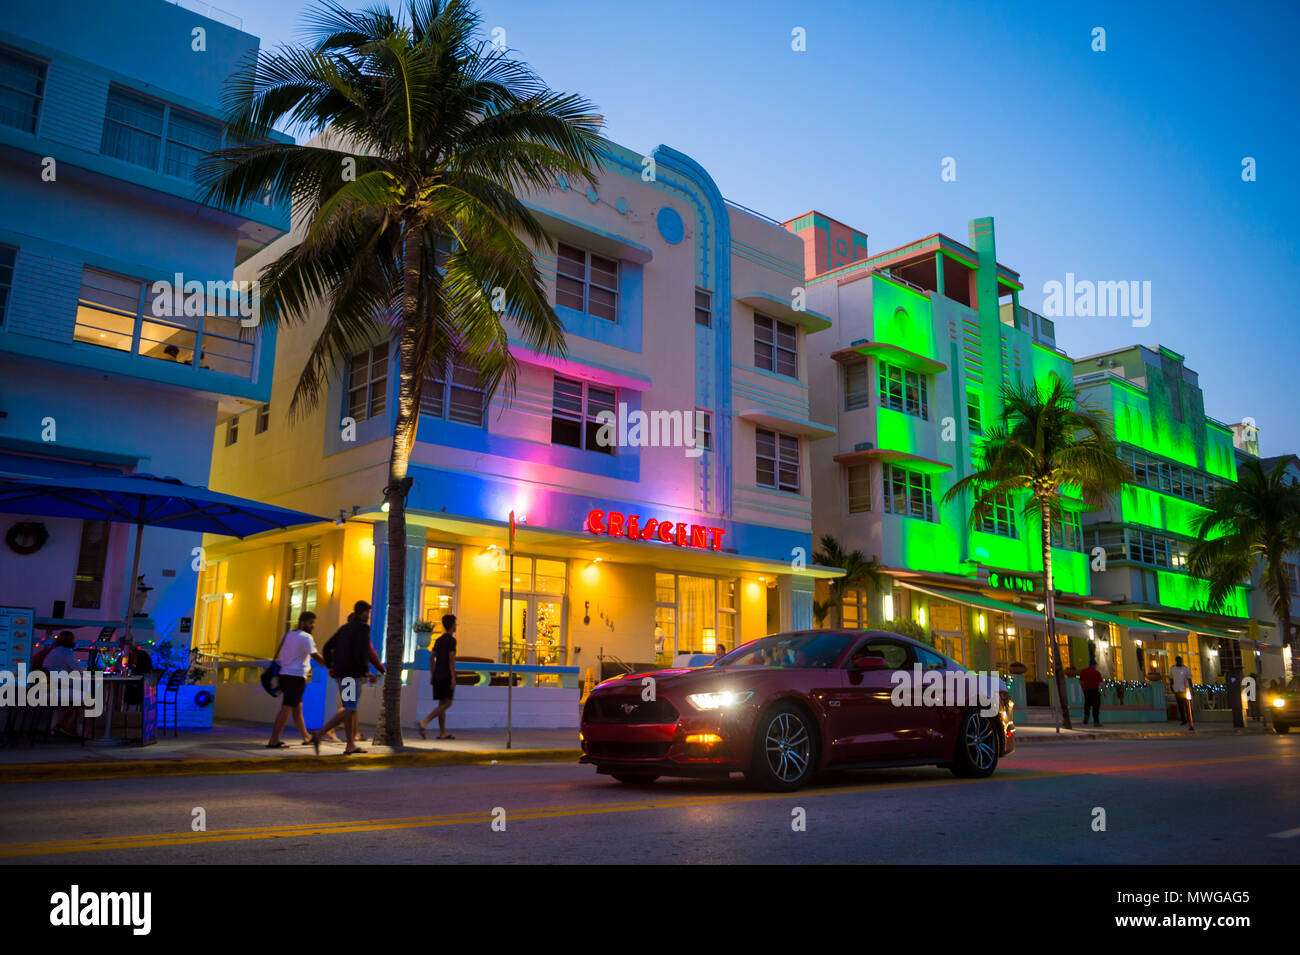 MIAMI - janvier 08, 2018 : Un convertible rouge passé lecteurs hôtels art déco emblématique et des enseignes au néon sur Ocean Drive à South Beach de nuit. Banque D'Images